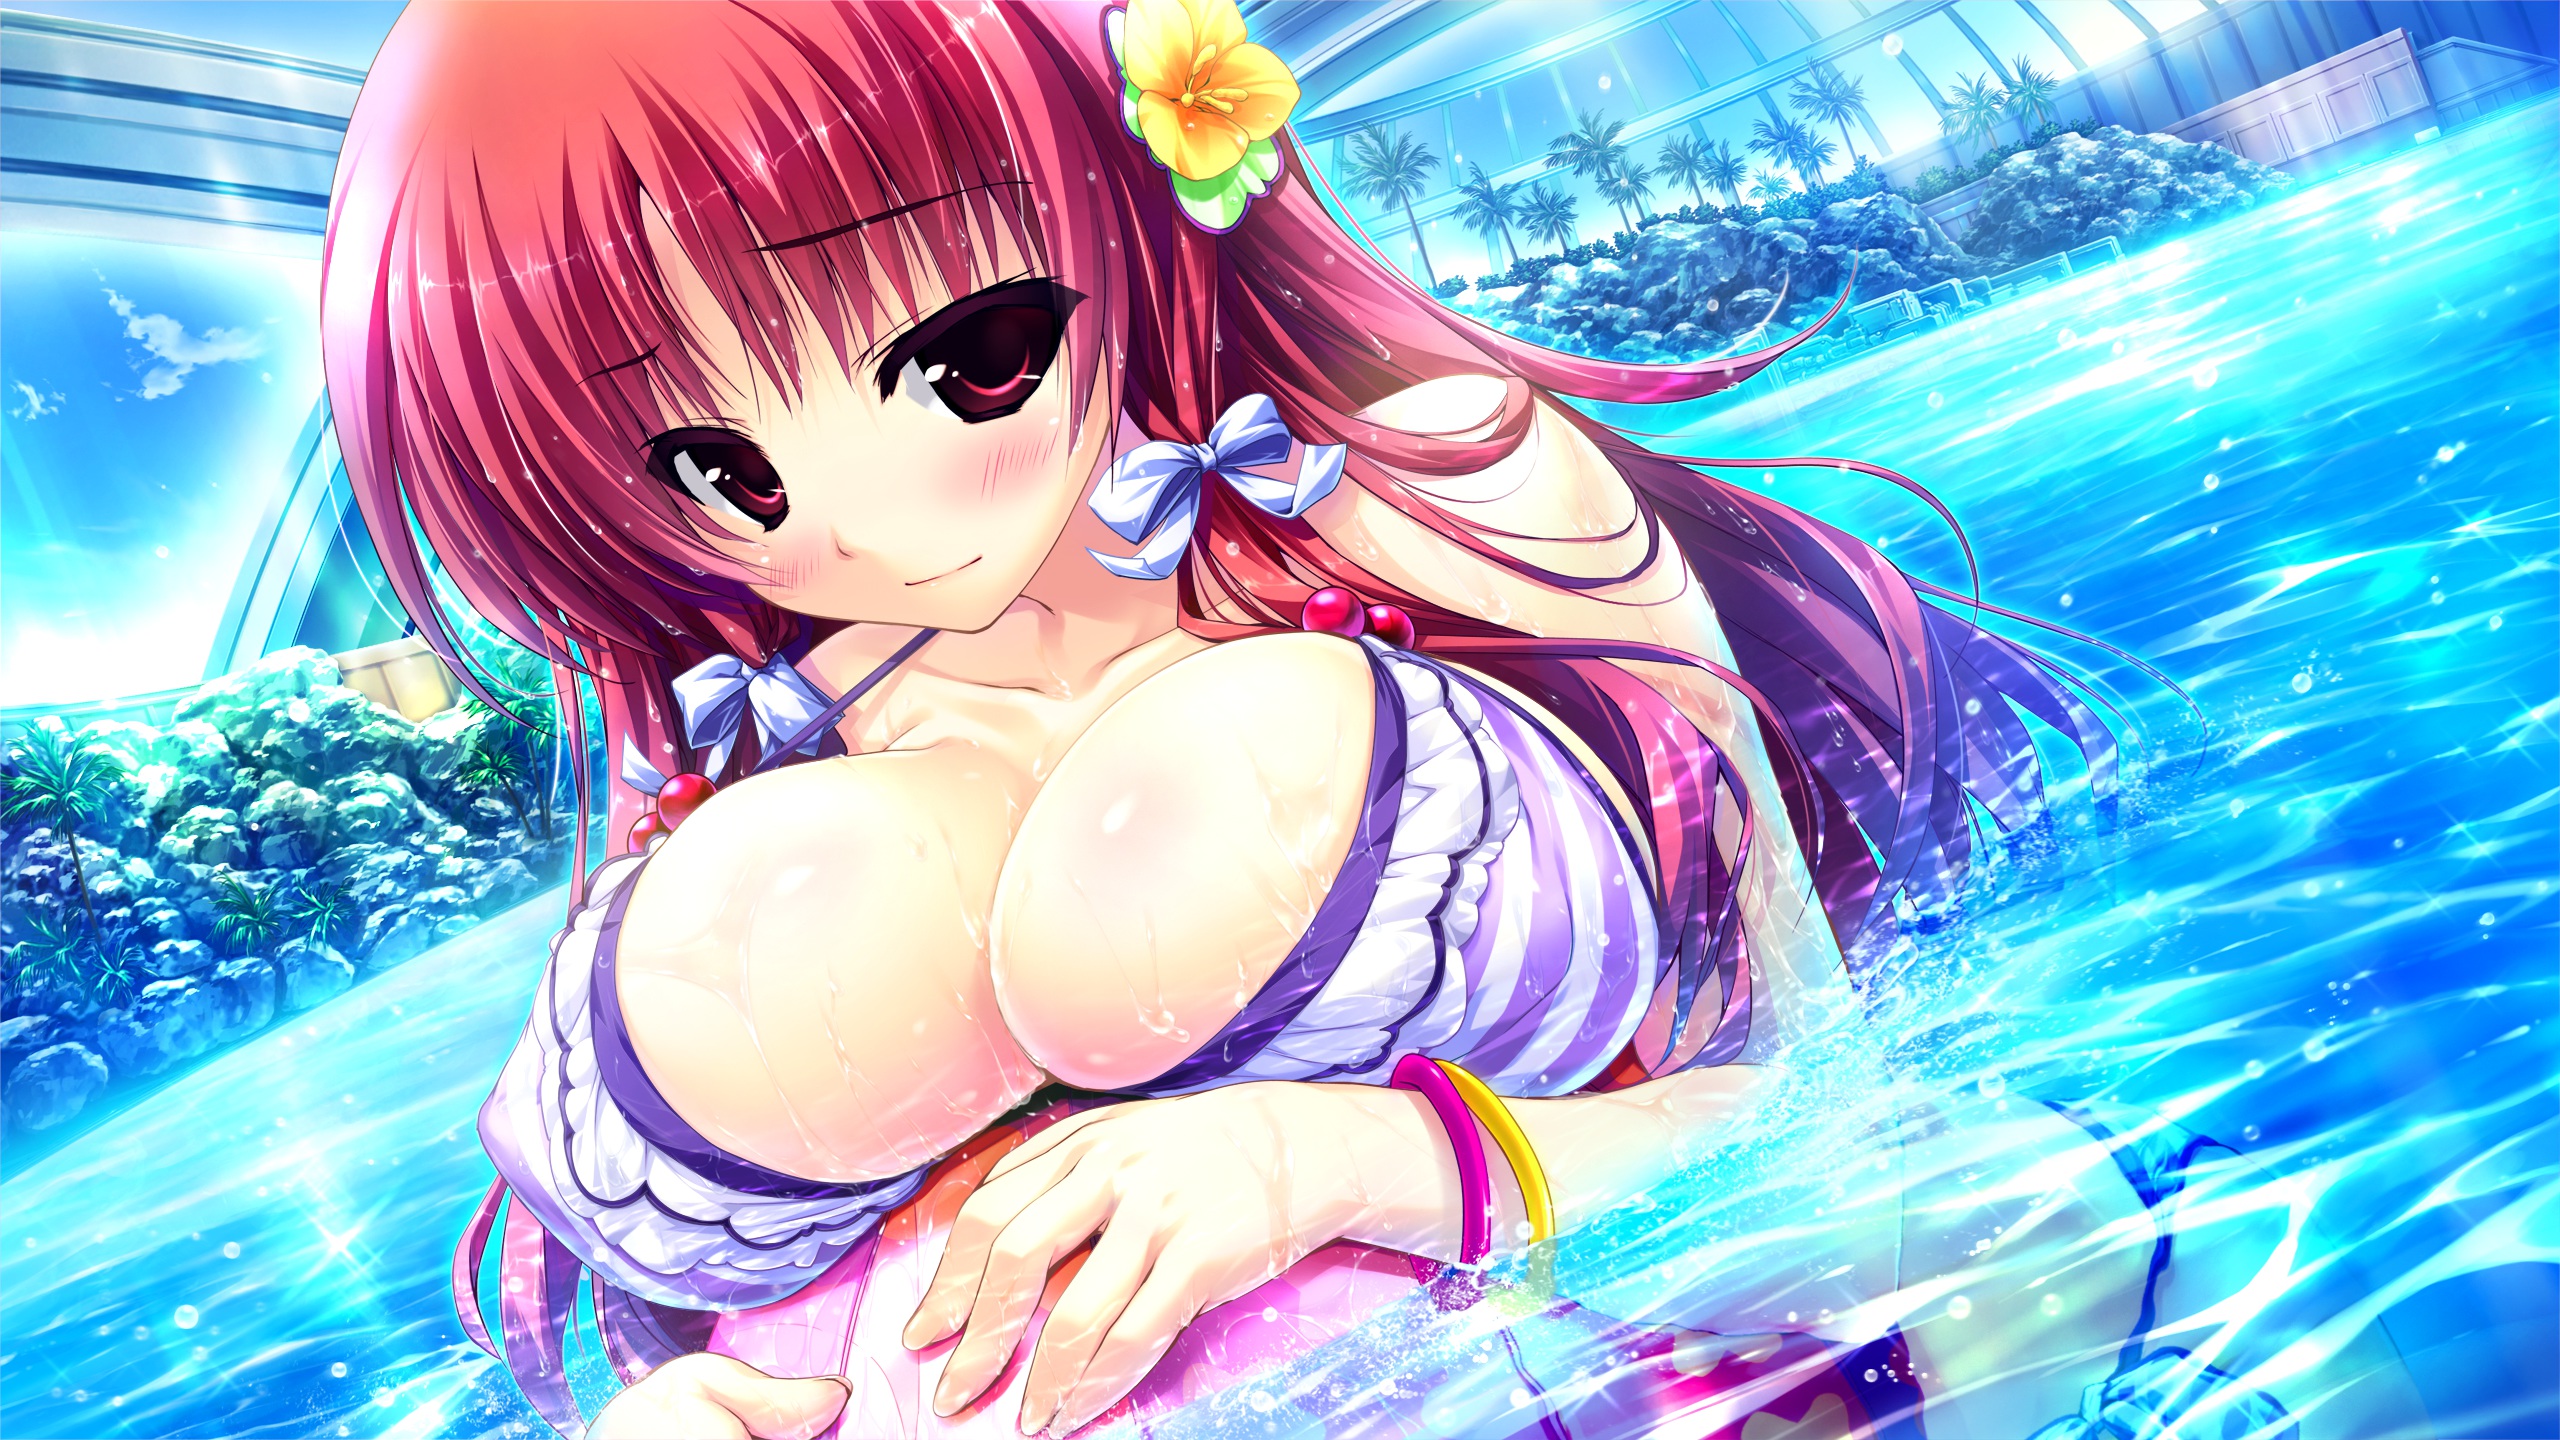 Anime 2560x1440 Prism Recollection cleavage bikini Shintarou artwork big boobs blushing redhead red eyes anime girls